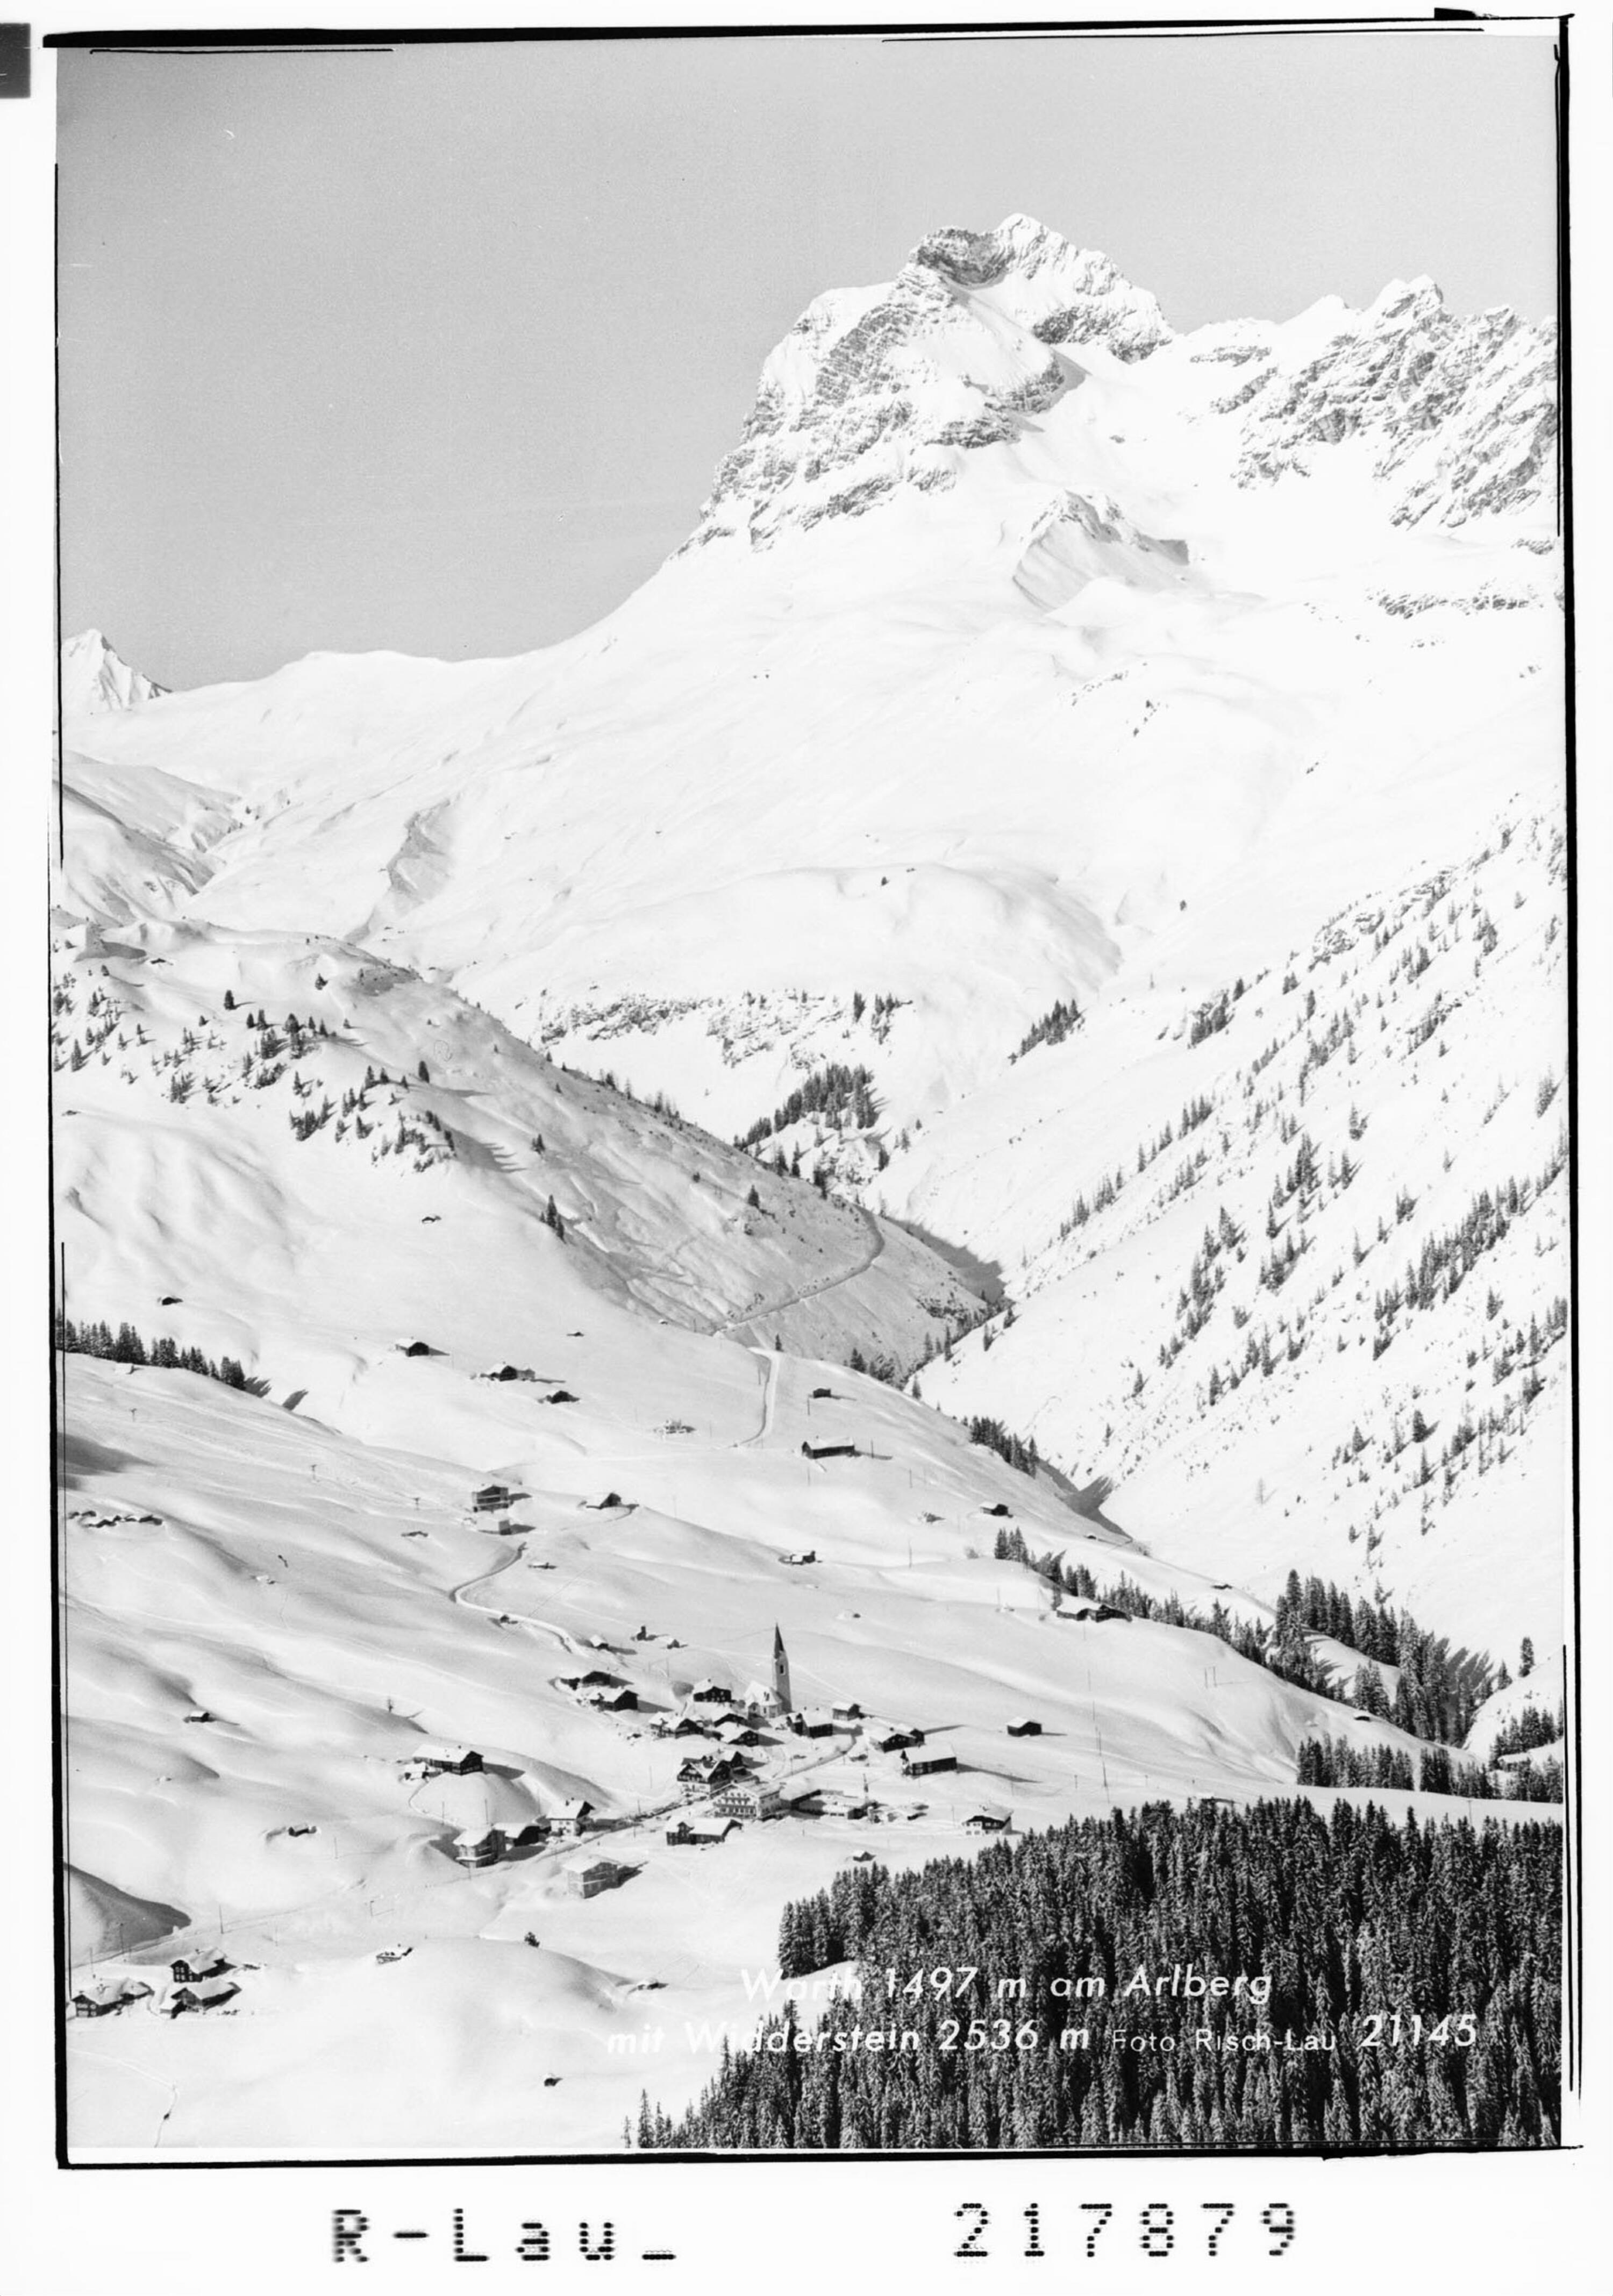 Warth 1497 m am Arlberg mit Widderstein 2536 m></div>


    <hr>
    <div class=